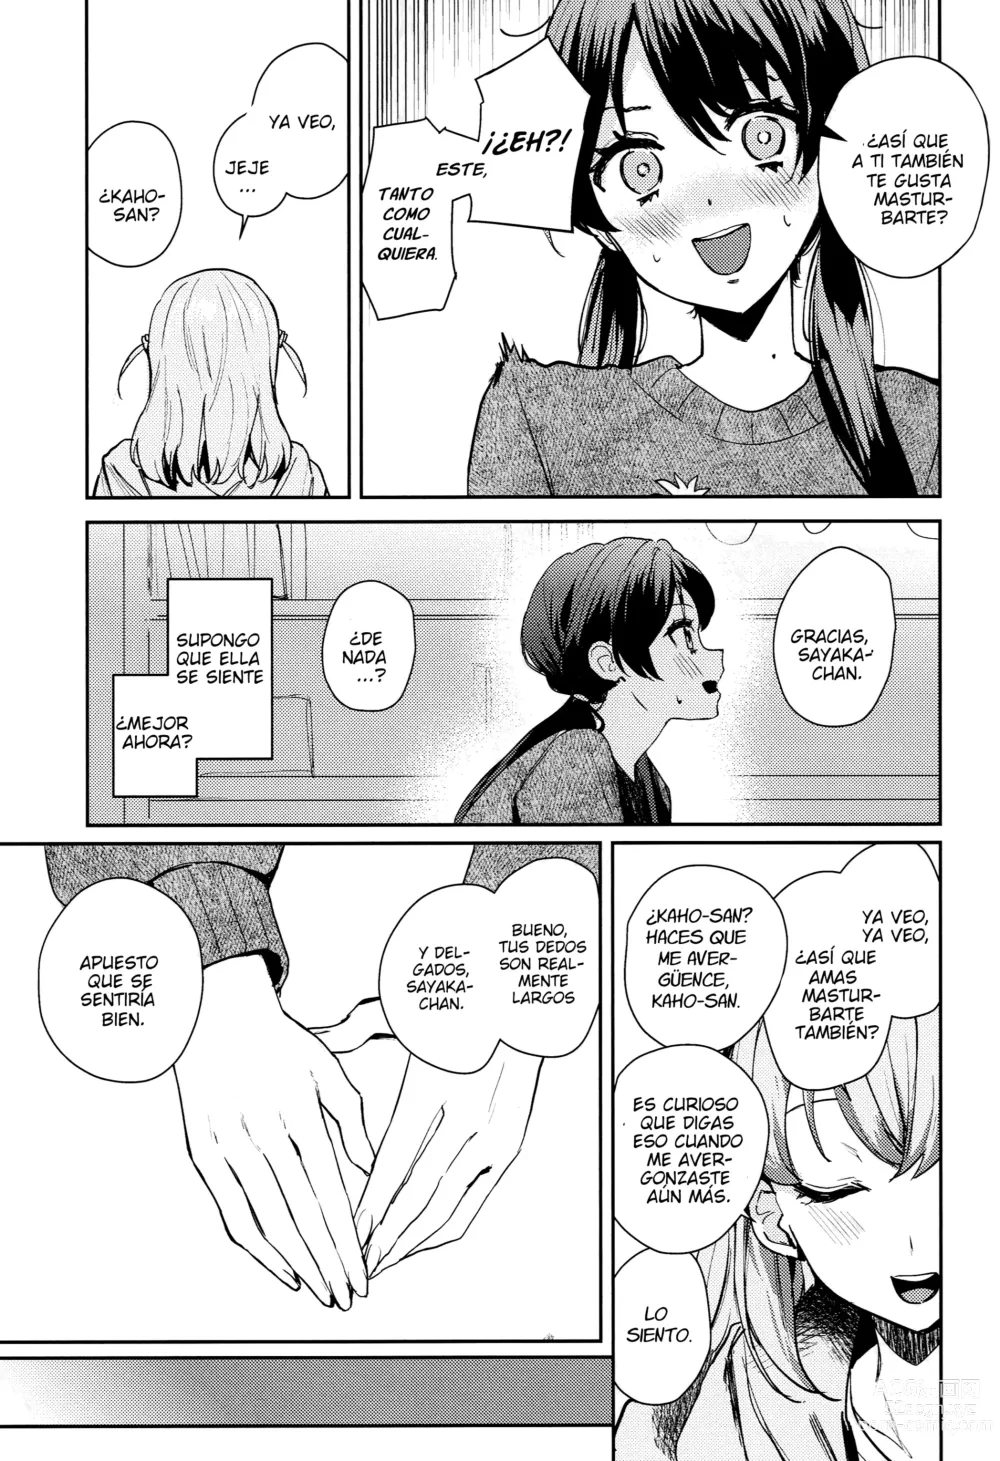 Page 8 of doujinshi Paradoja de Sentimiento